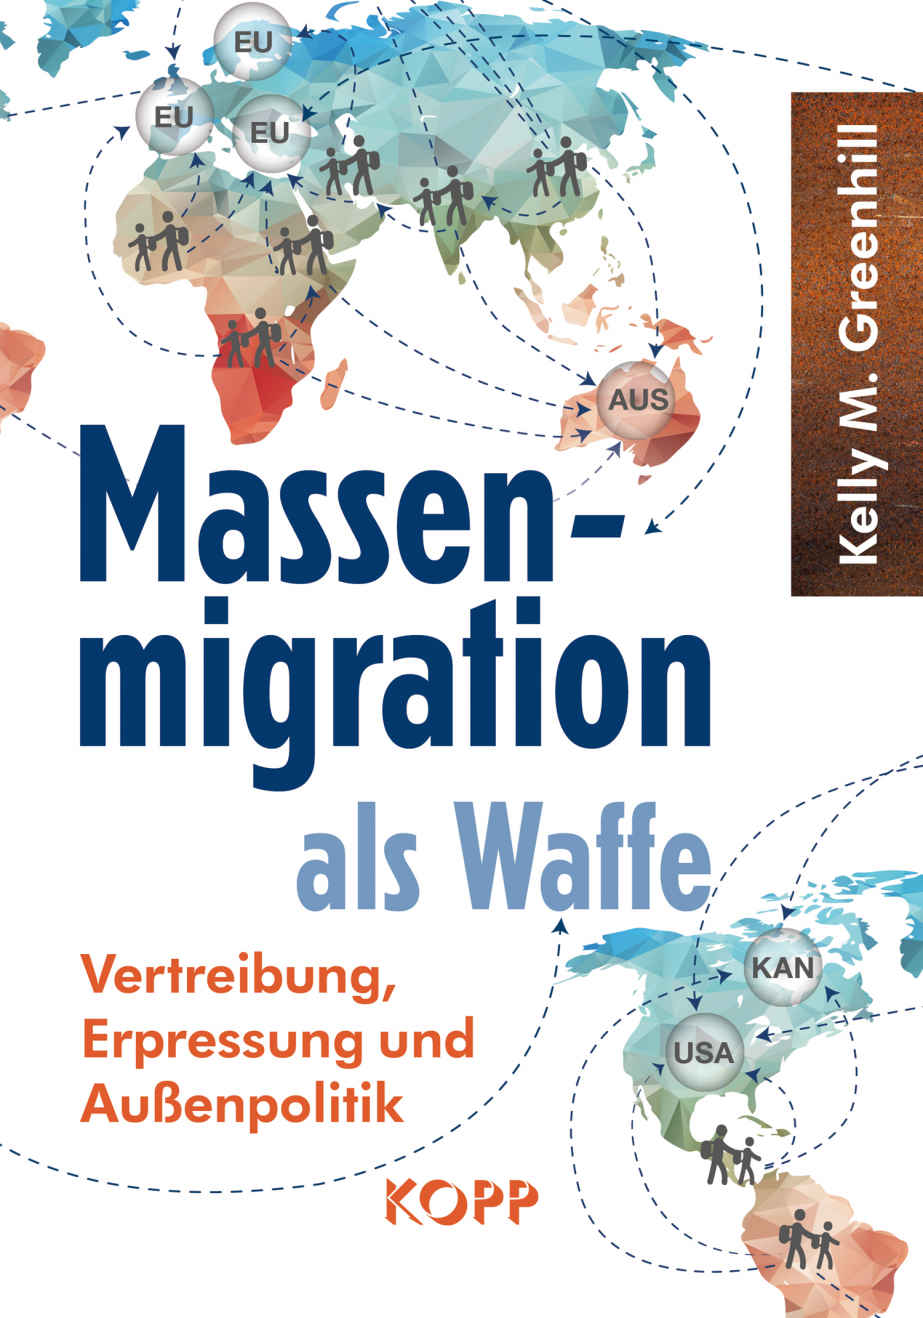 Massenmigration als Waffe: Vertreibung, Erpressung und Außenpolitik